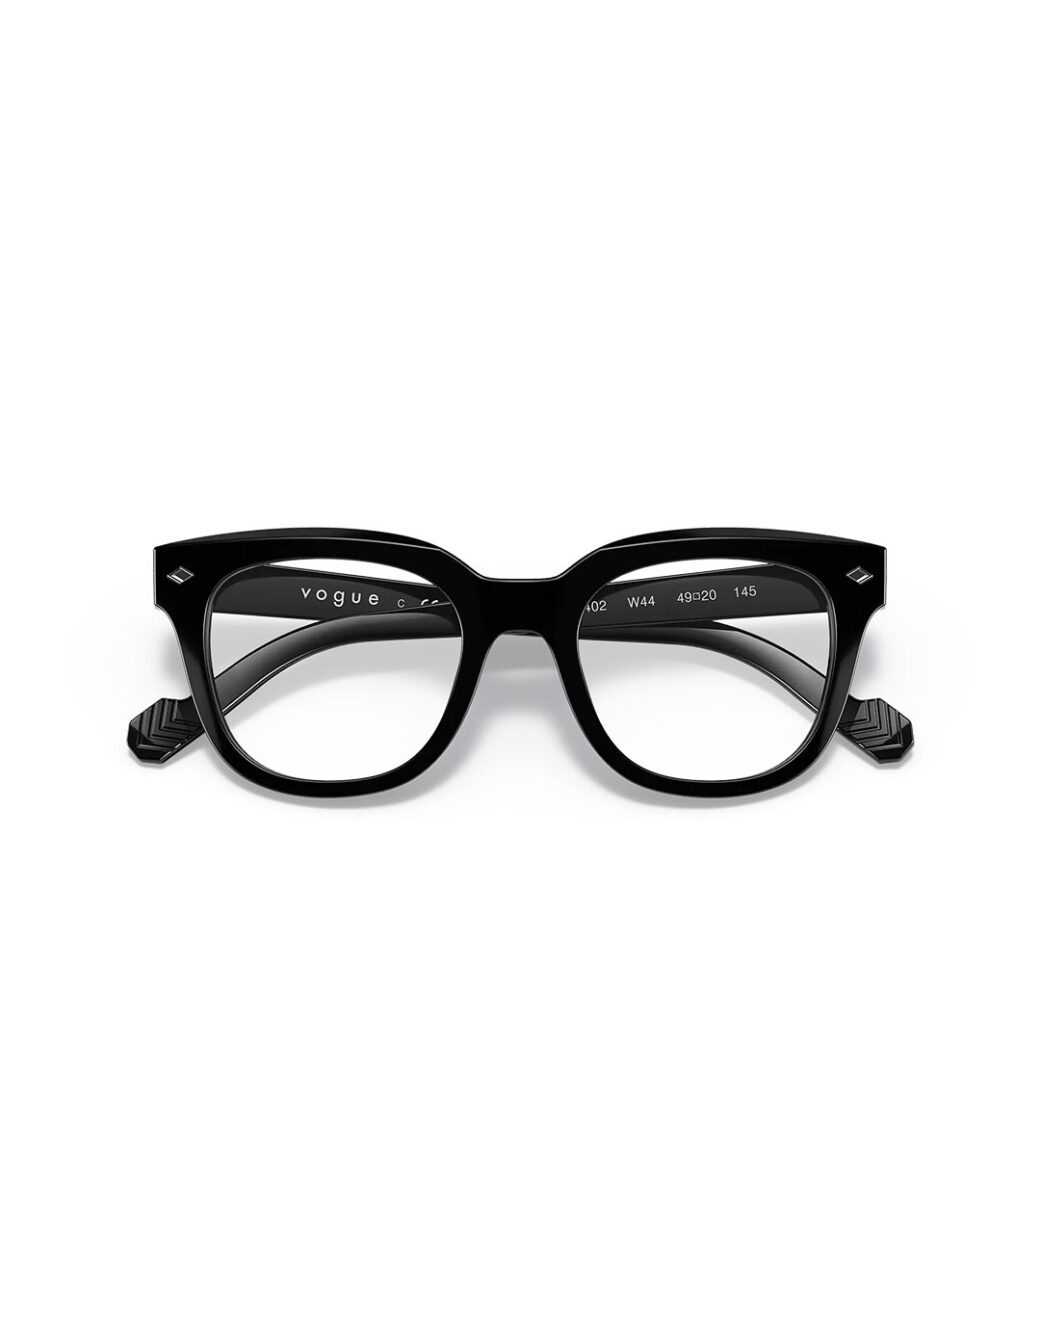 Vogue Eyewear - Shop Men Eyeglasses from UAE Optics - uaeoptics.com